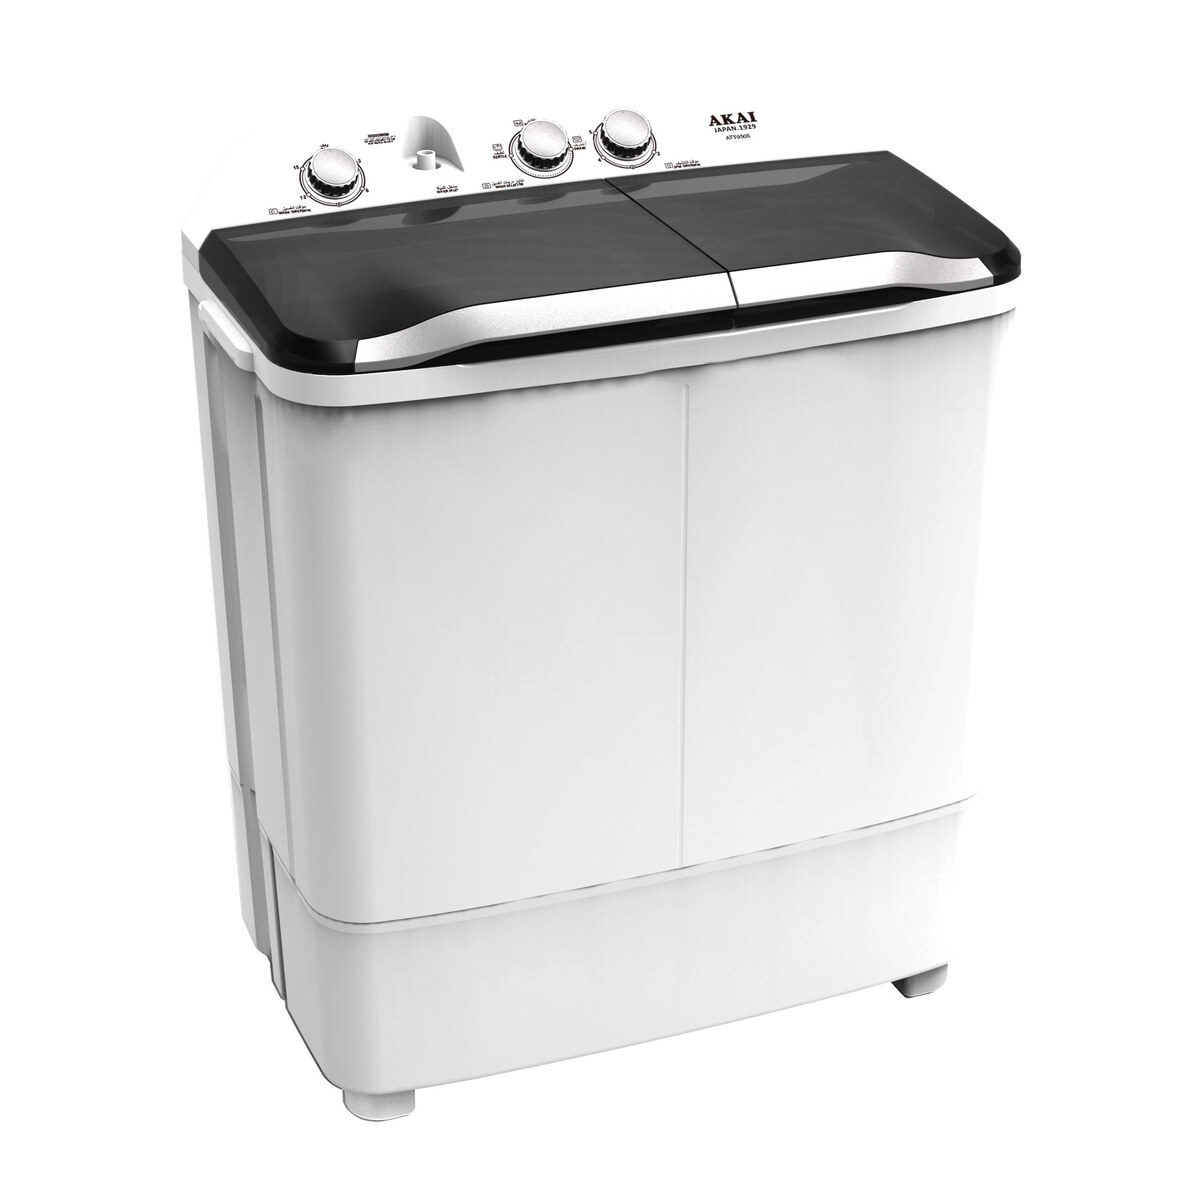 Akai Twin Tub Washing Machine-ATT-950S, 7Kg